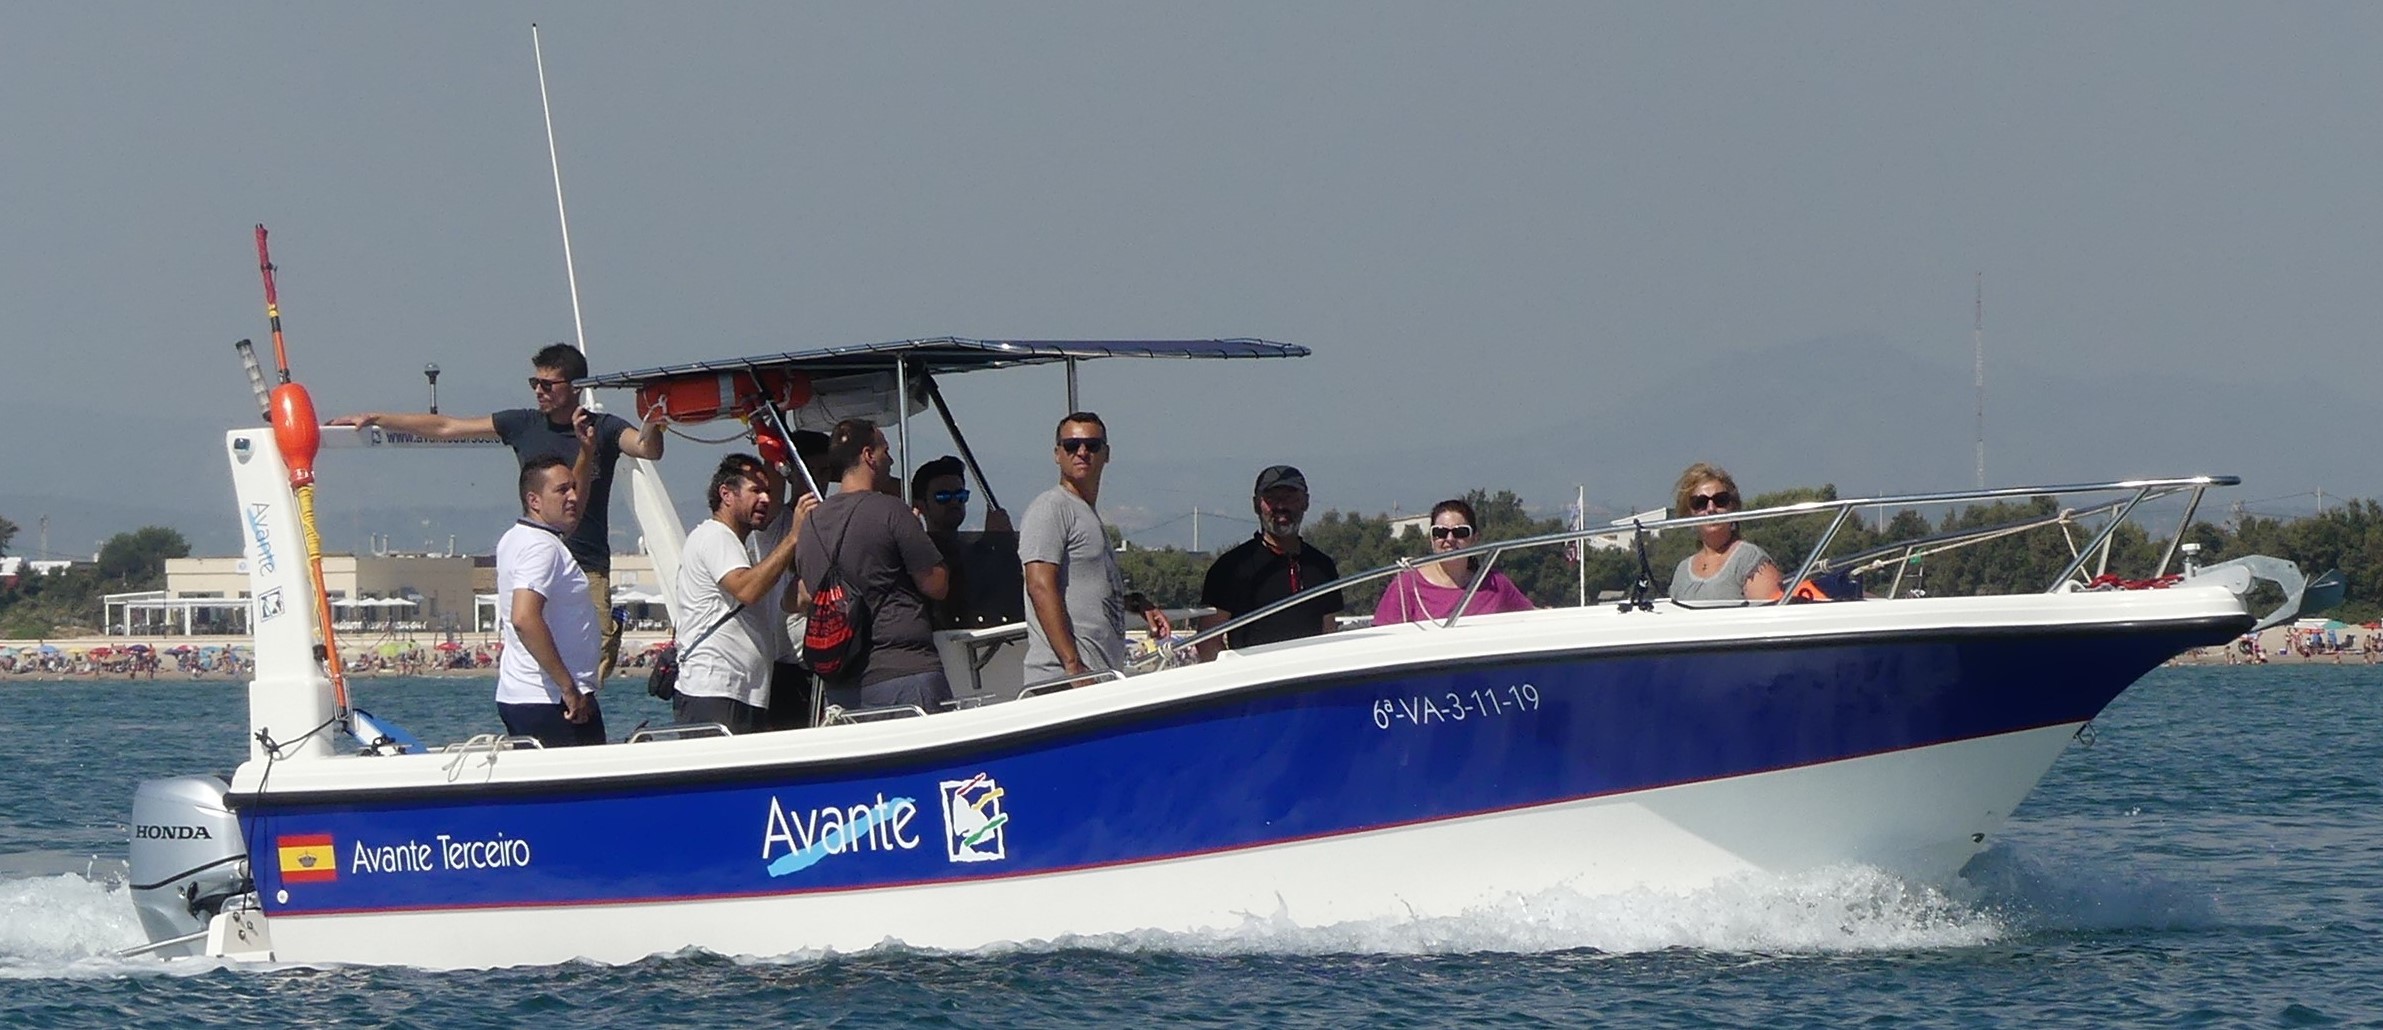 El Avante Terceiro navega frente a la playa de Pinedo, muy cerca de la Marina Valencia Mar. Prácticas PER motor